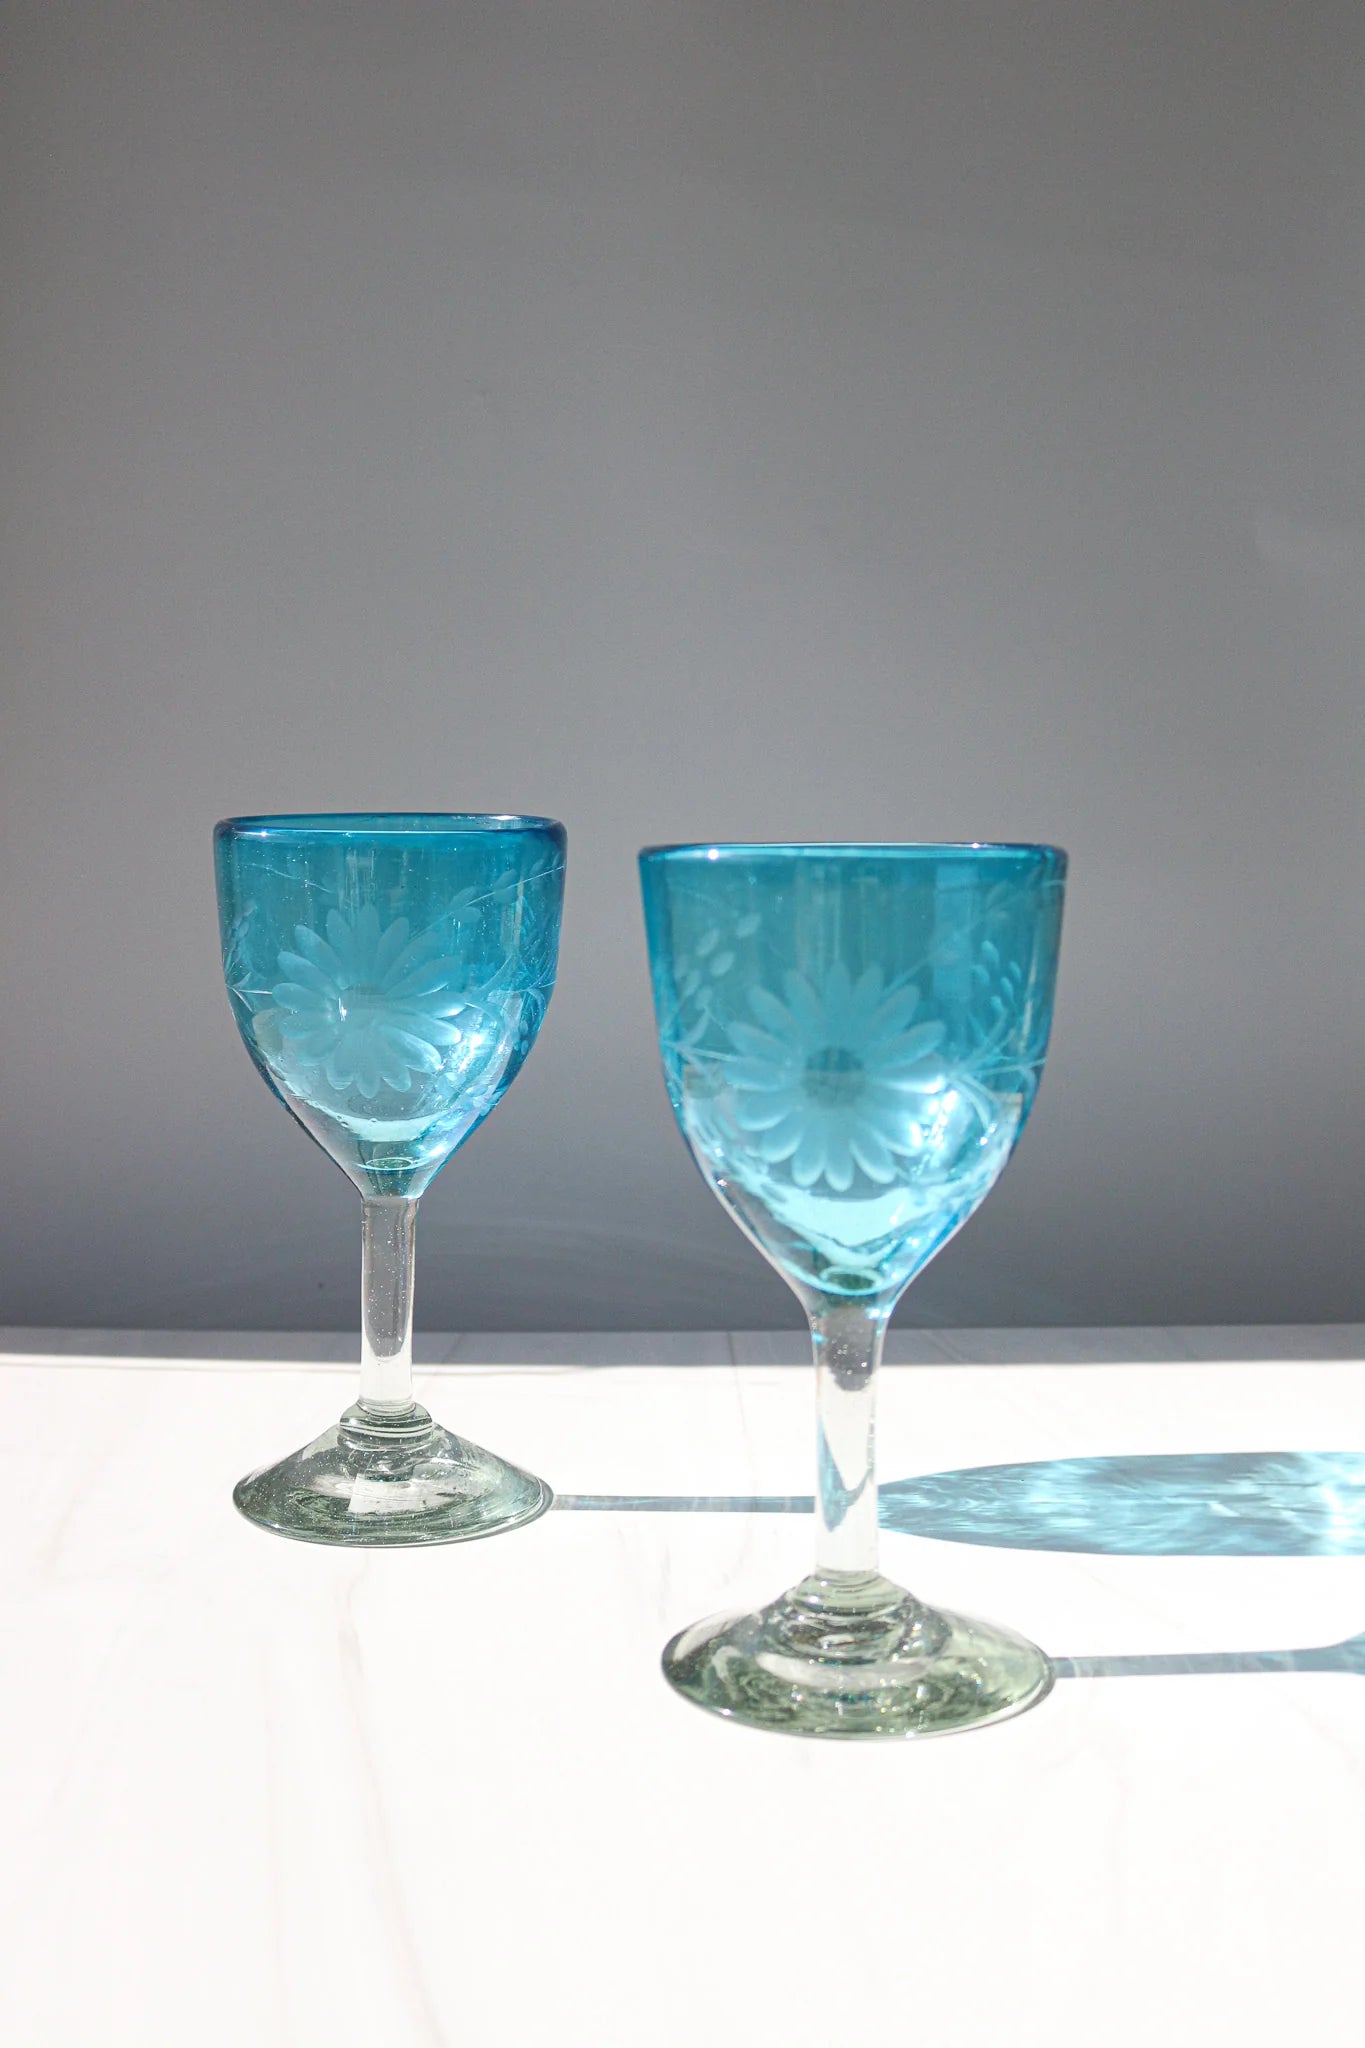 Aqua Condessa Wine Glass